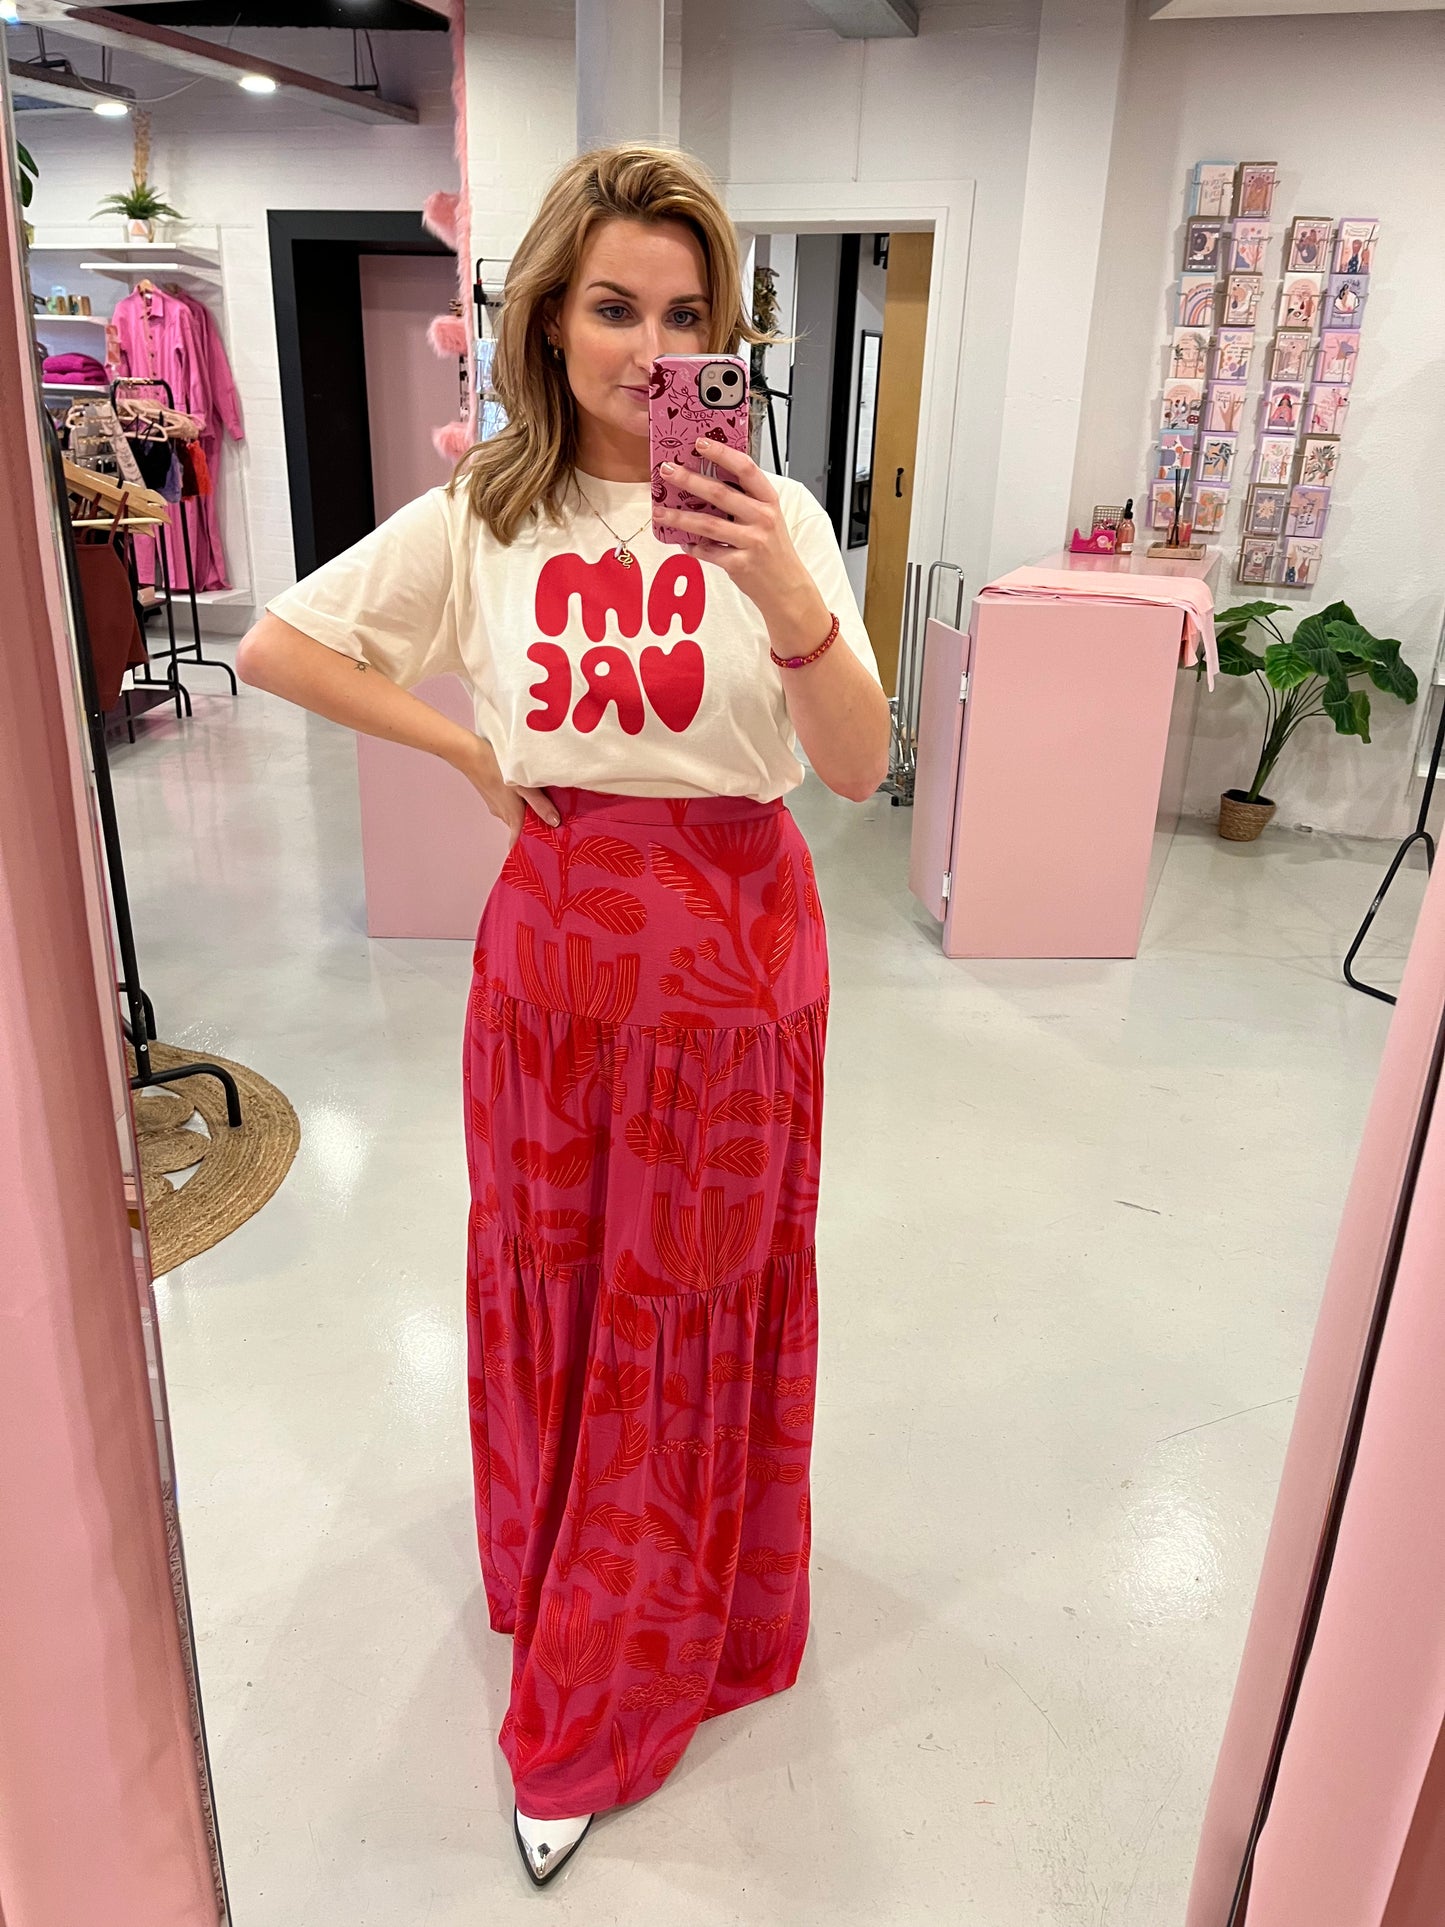 Lange rok met print rood/roze